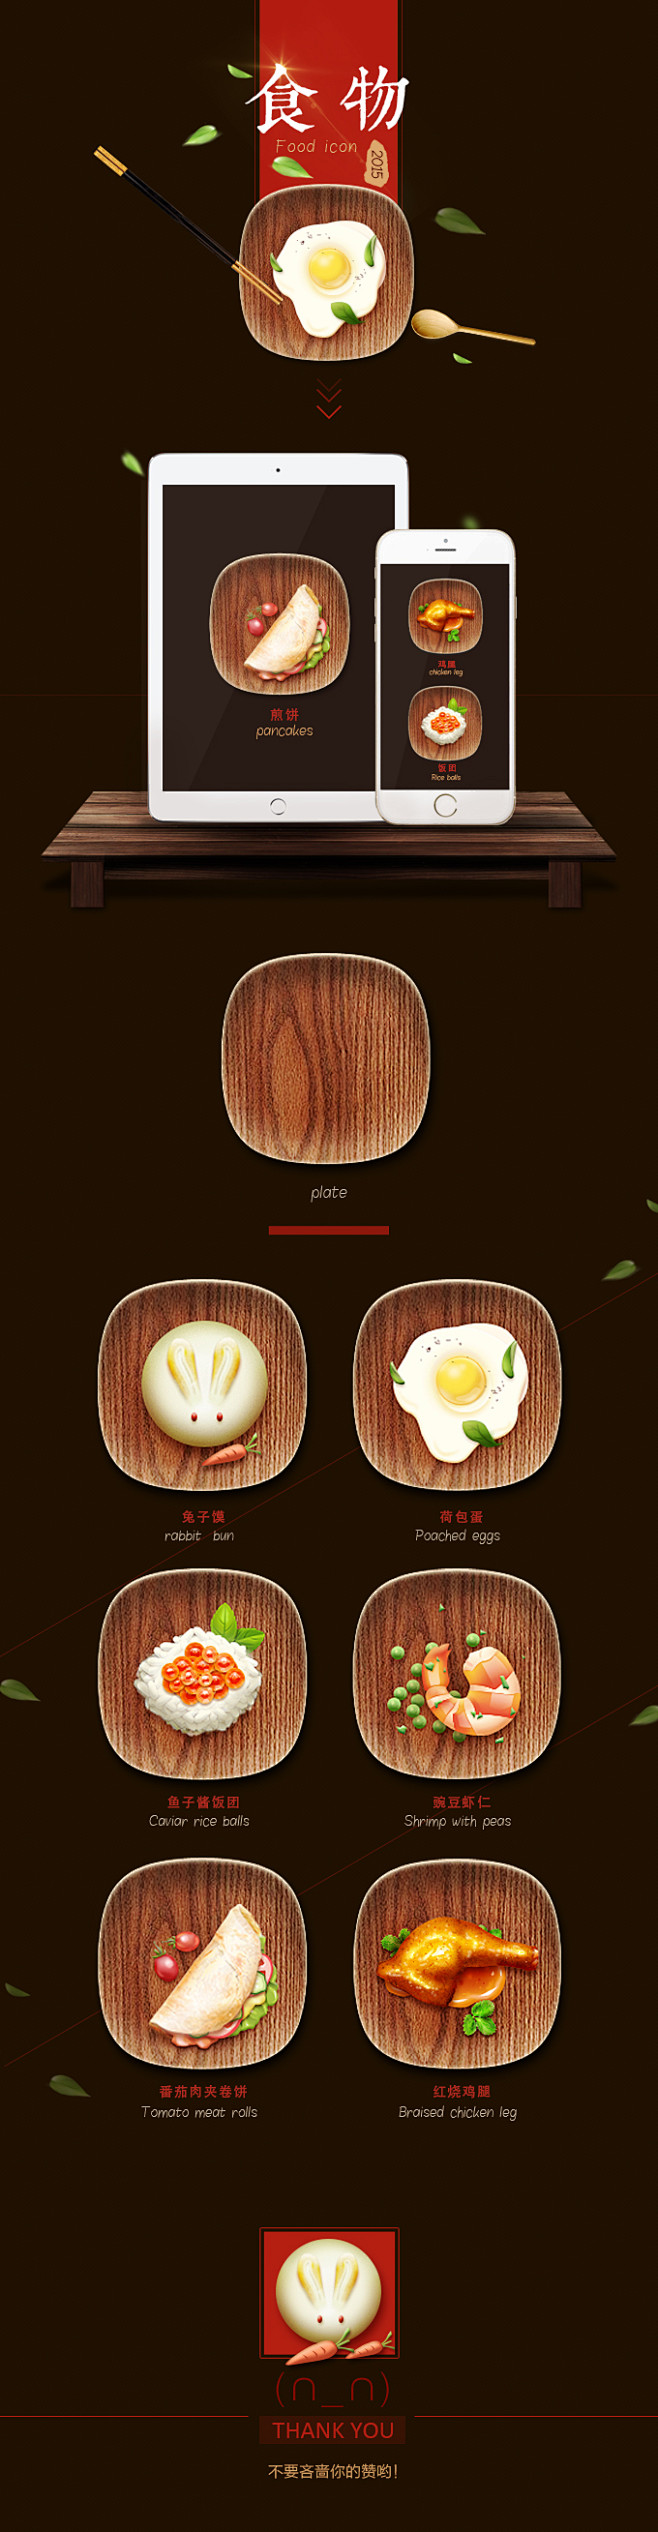 食物主题图标设计UI